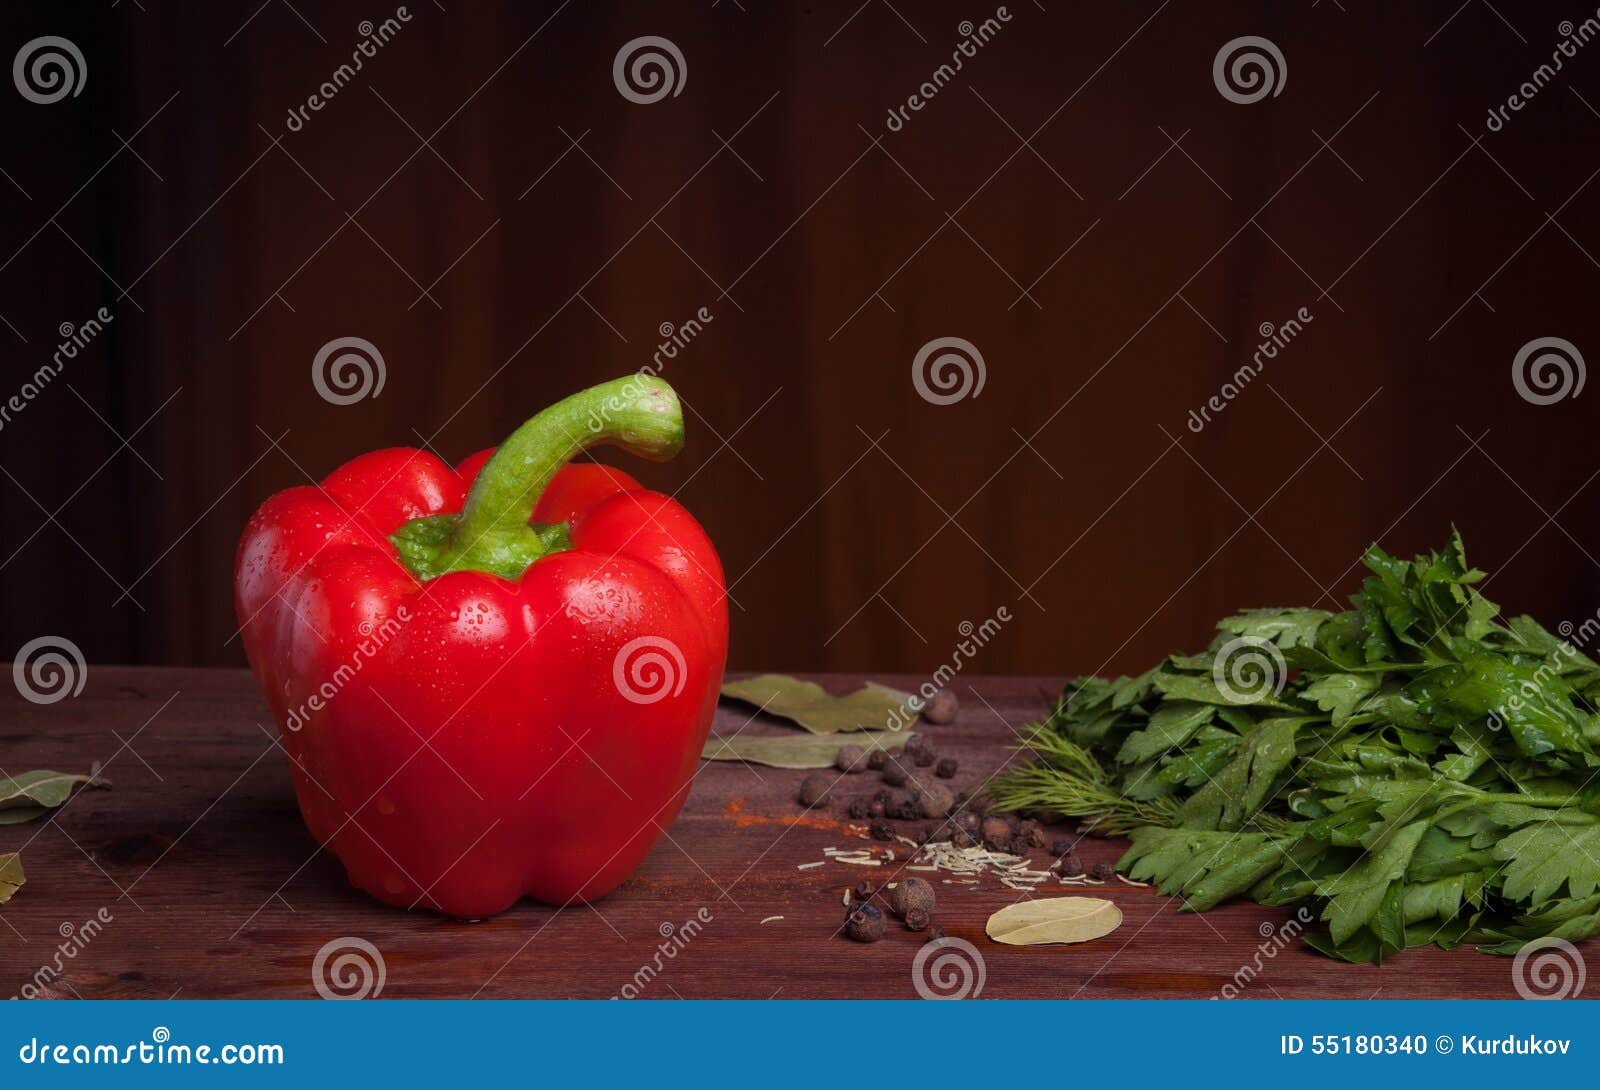 Red Pepper, Herbs An